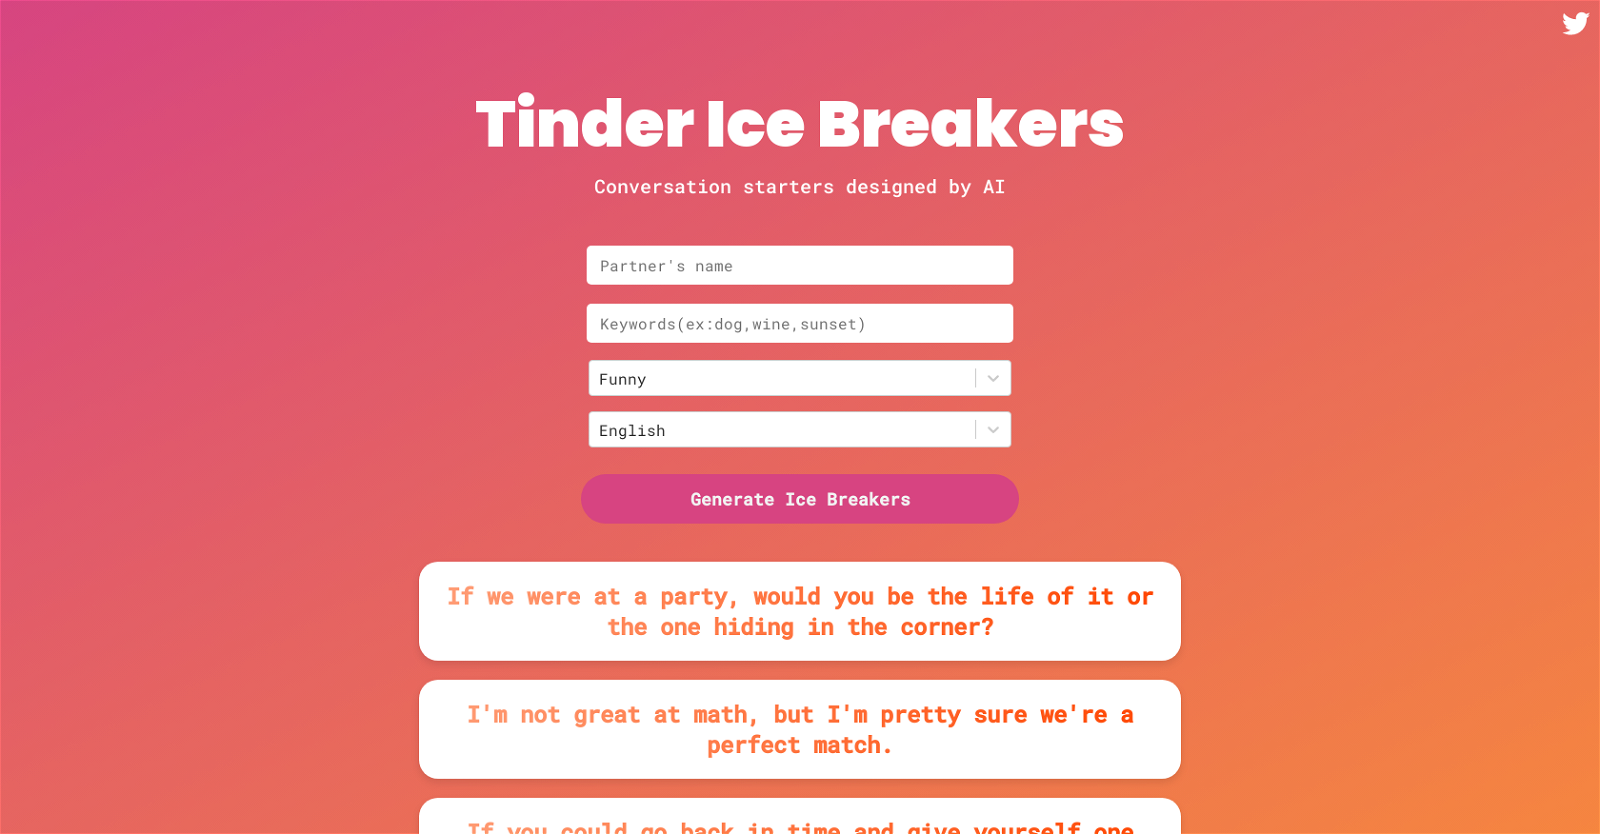 Tinder Ice Breakers website